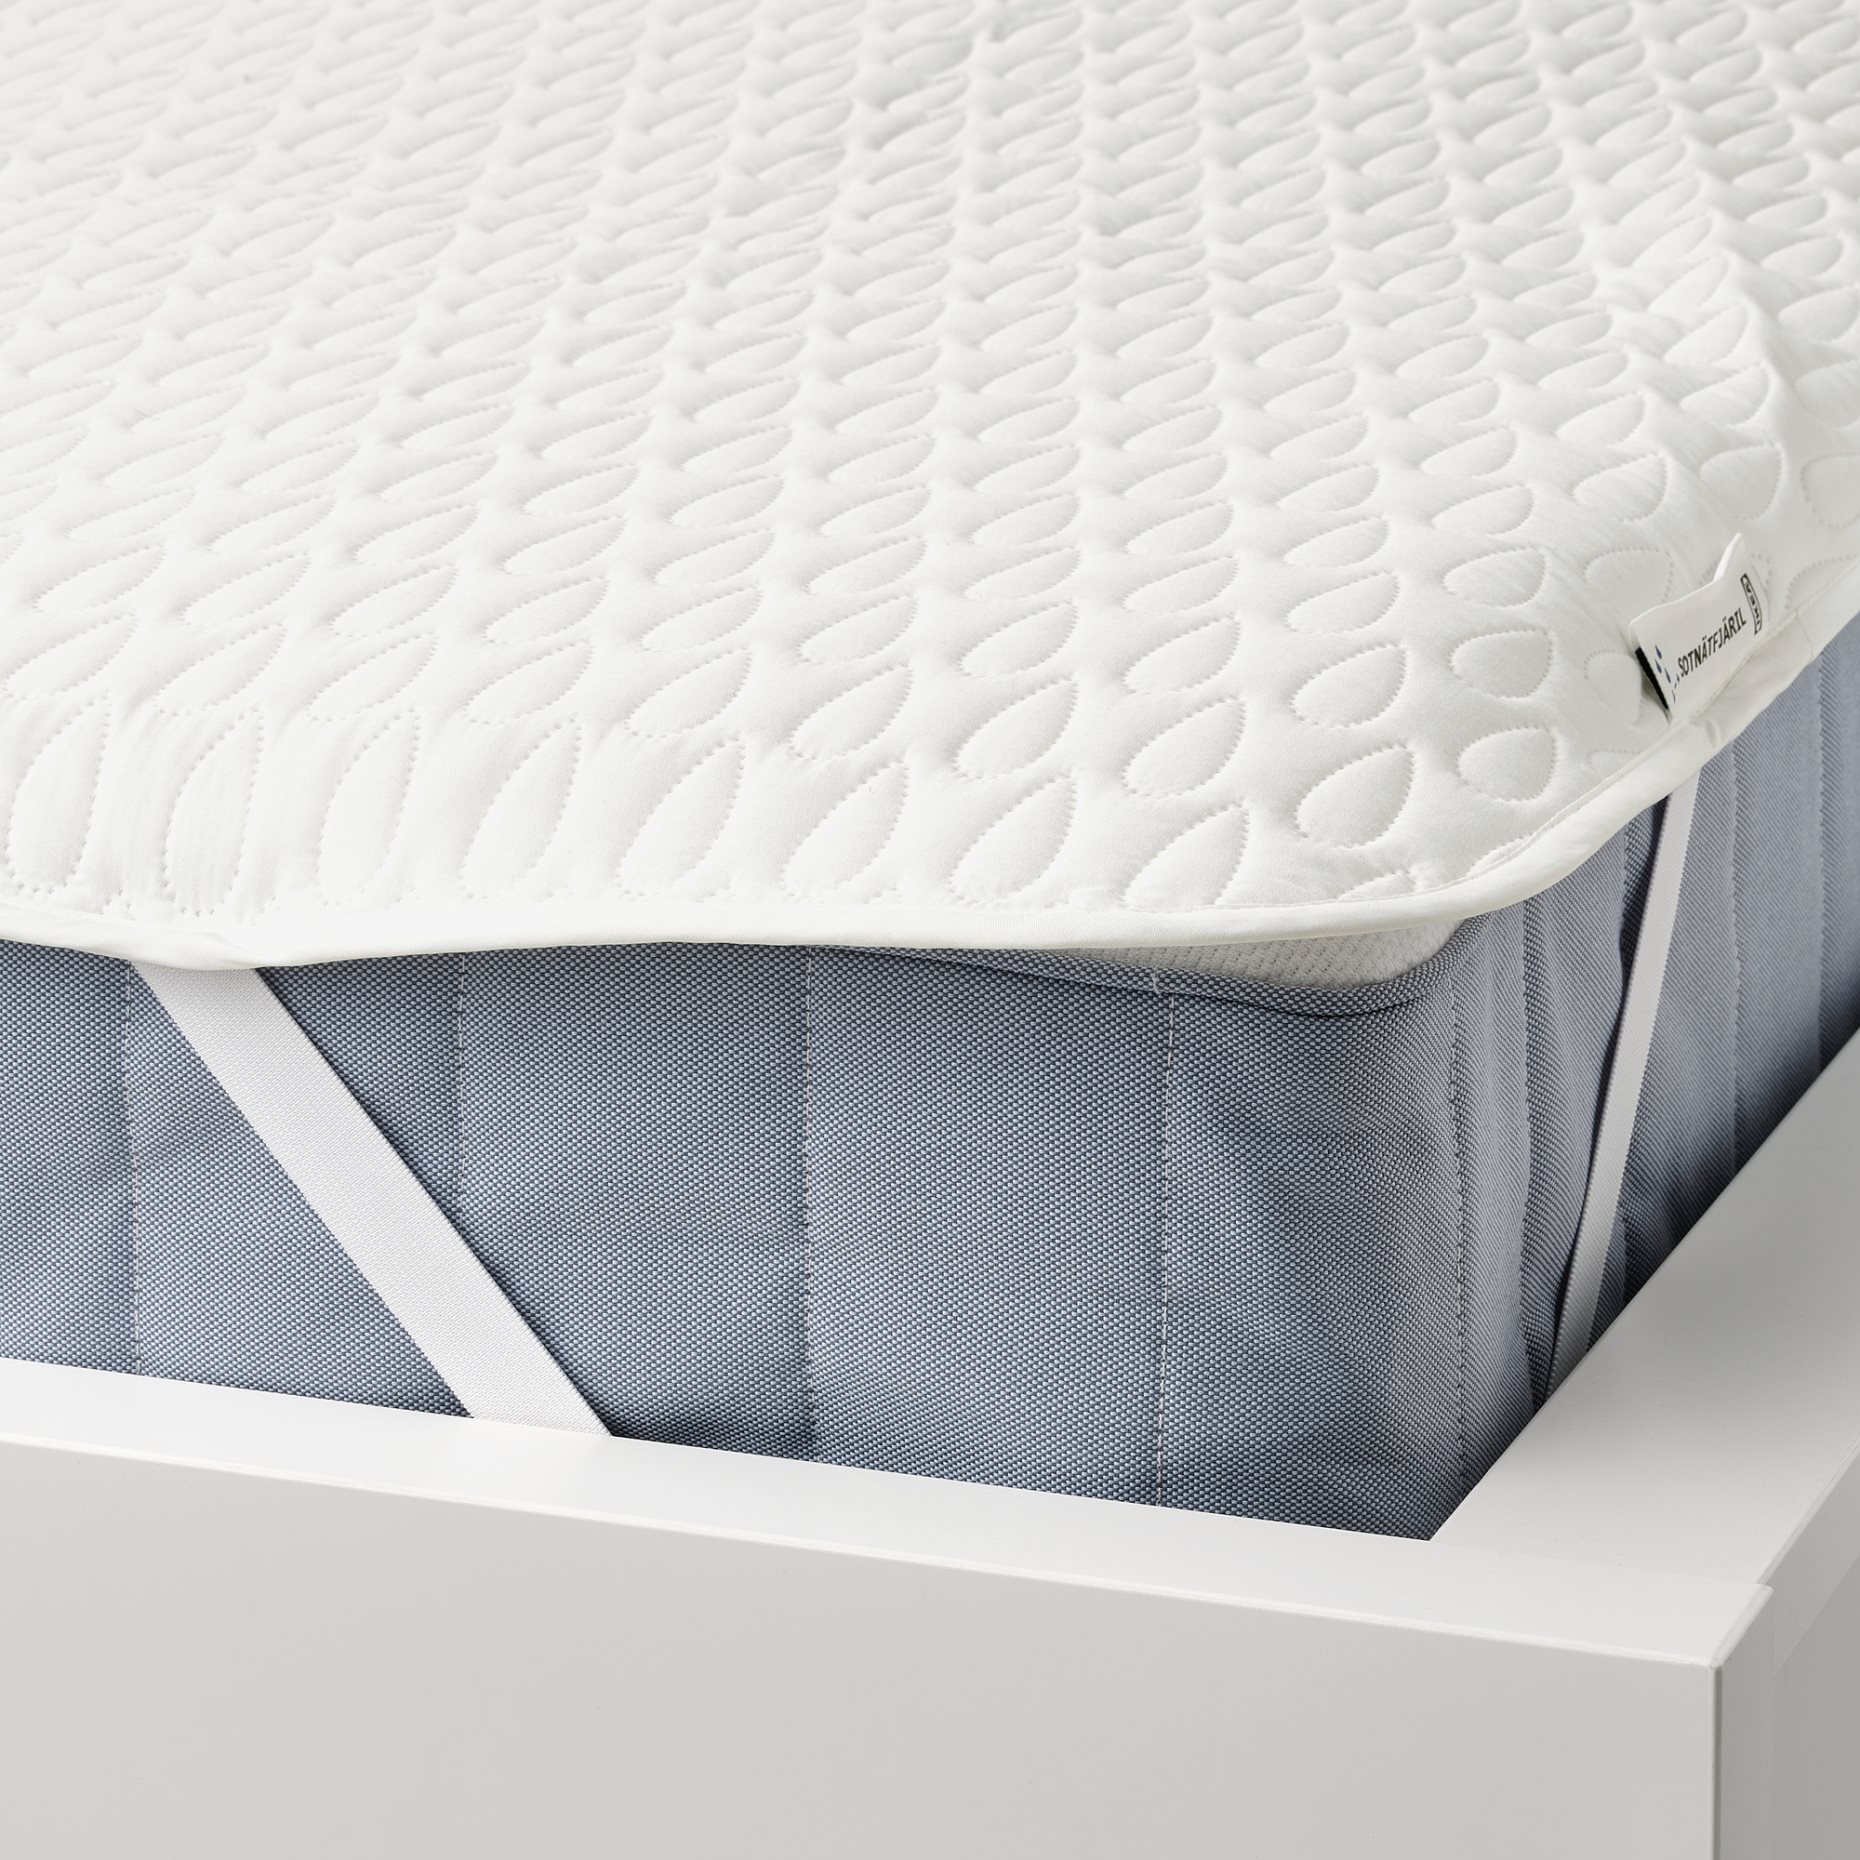 SOTNÄTFJÄRIL, waterproof mattress protector, 120x200 cm, 005.312.83